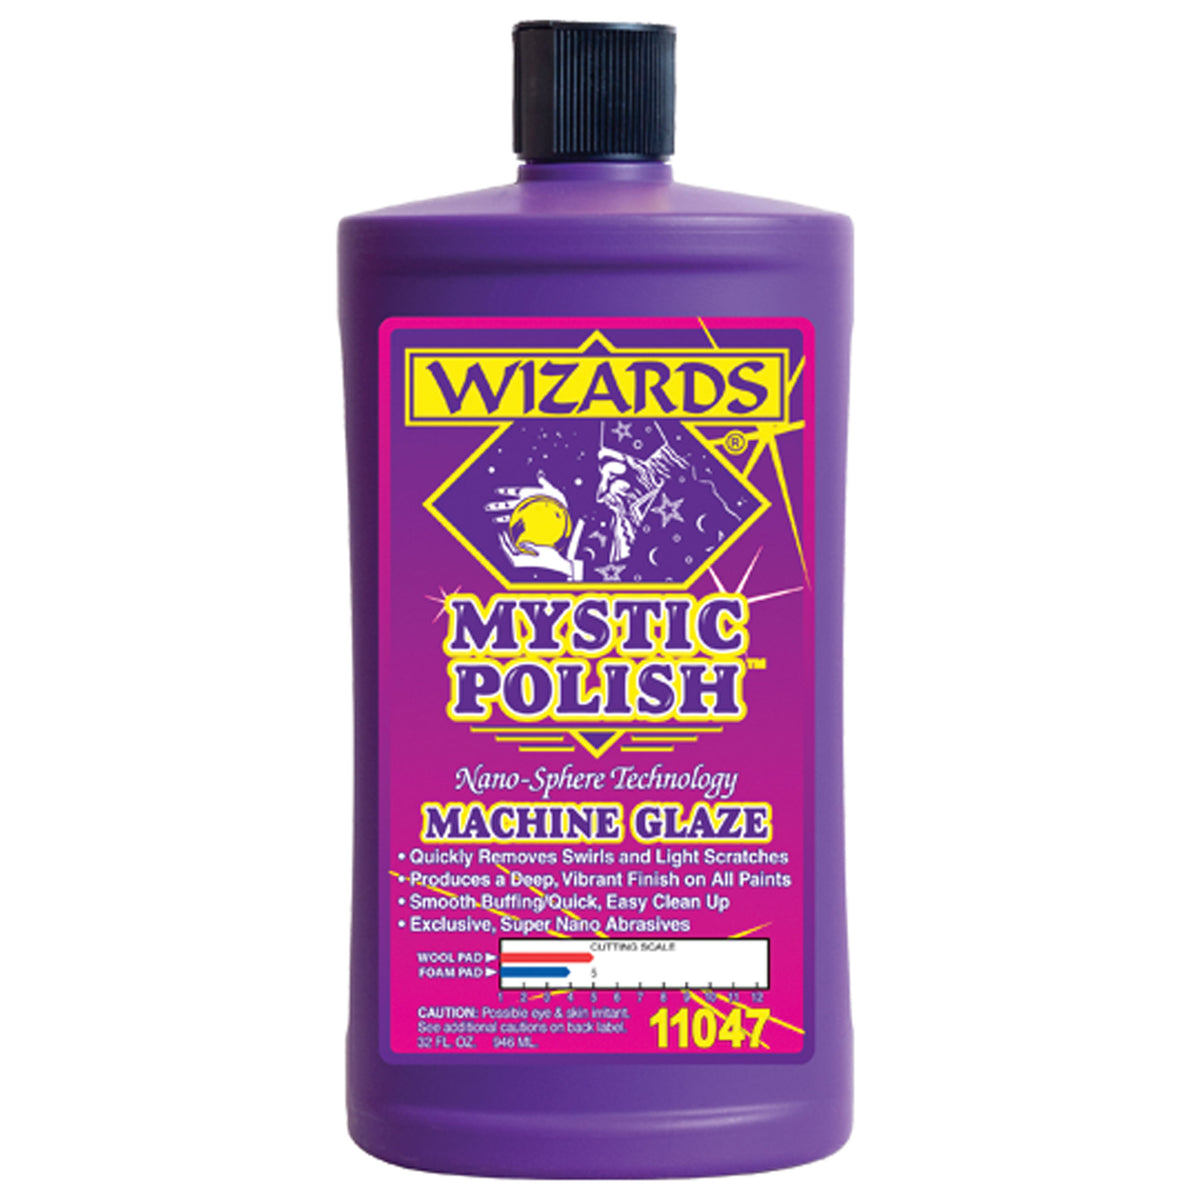 Wizards 11047 Mystic Polish Machine Glaze - 32 oz.